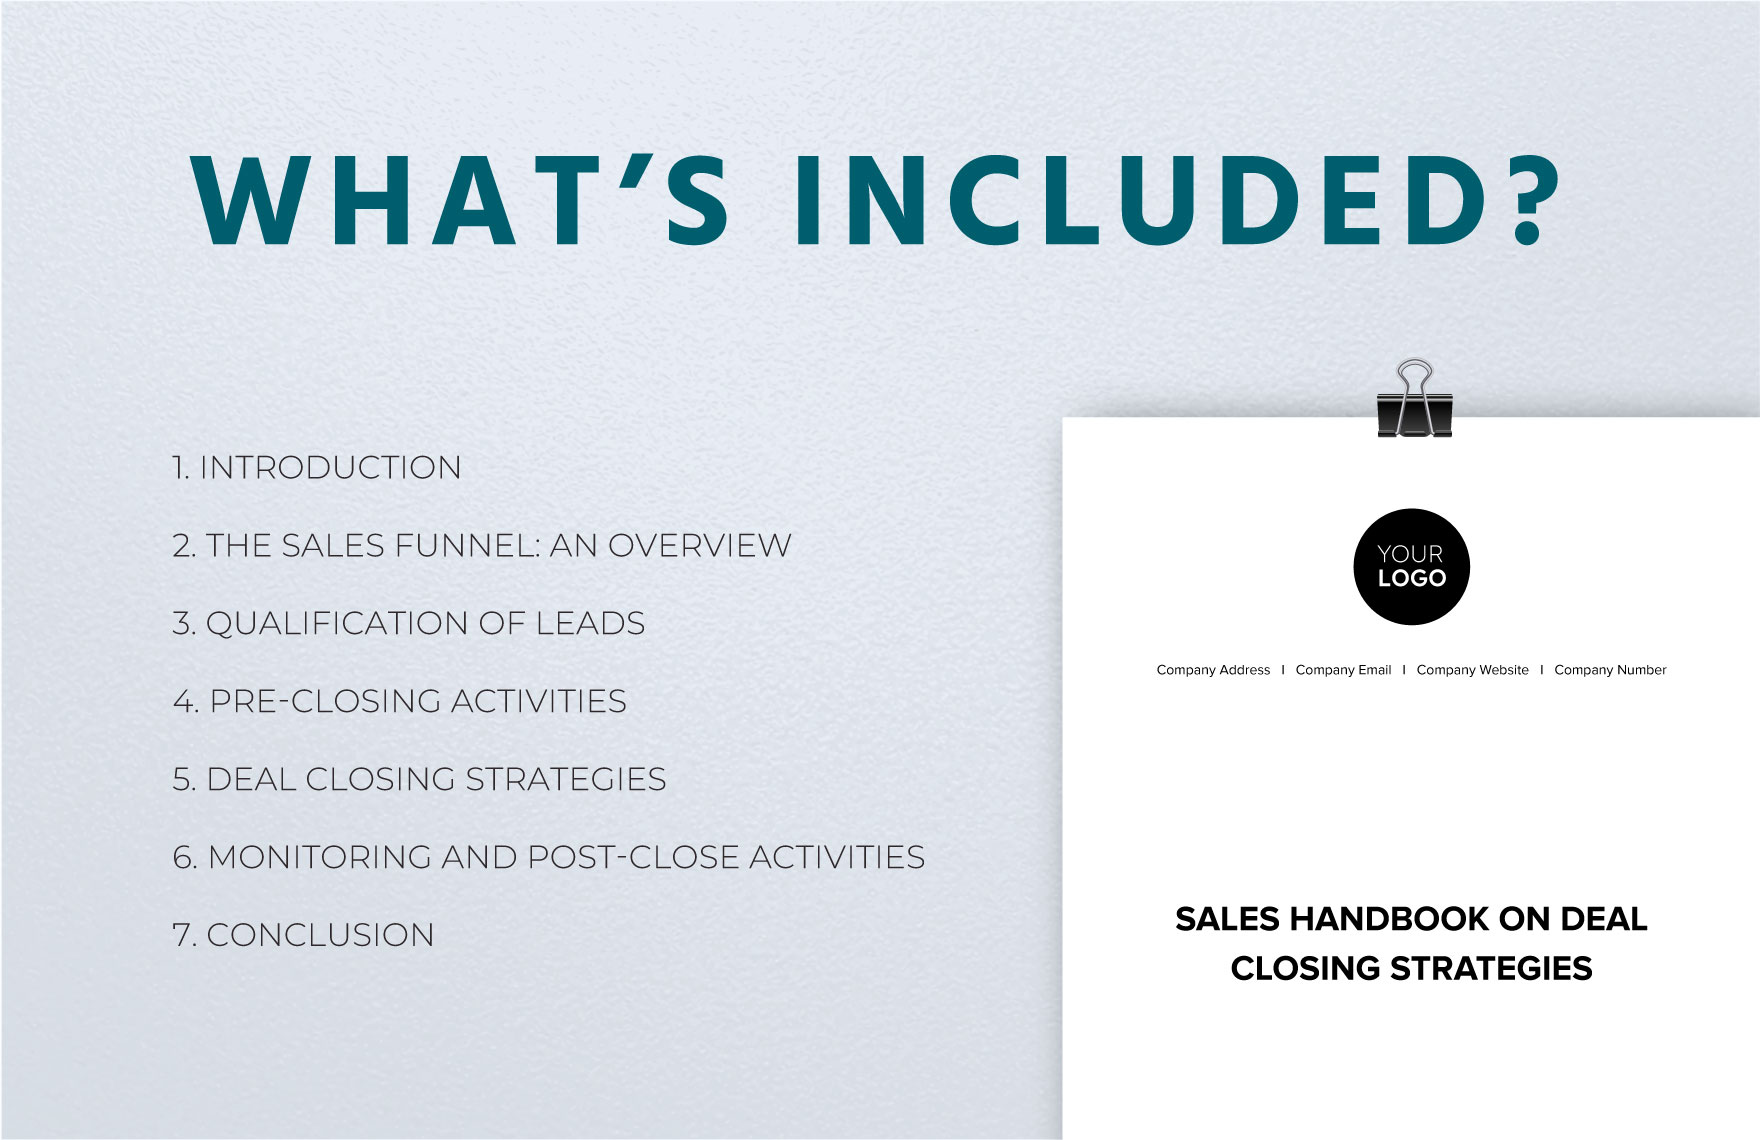 Sales Handbook on Deal Closing Strategies Template